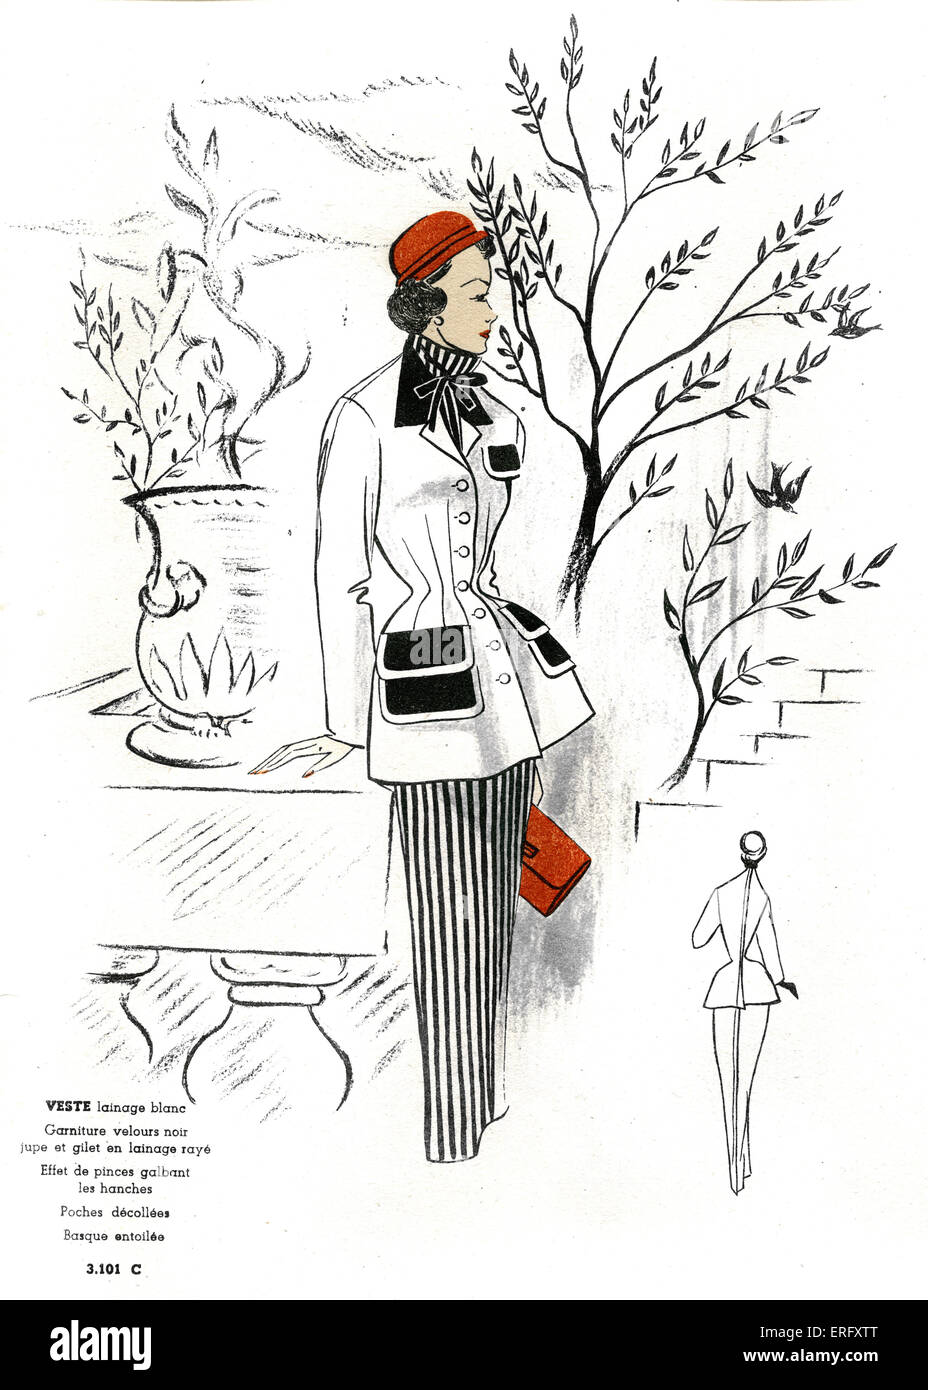 Französische Mode, Design für eine weiße wollene Jacke mit einem gestreiften wollenen Rock und Bluse / Veste Lainage Blanc, Jupe et de Lainage Rayé Gilet. Für den späten 1940er Jahren. Das Modell trägt einen roten Hut und hält eine rote Clutch-Tasche. Vom Modus de France Frühlingsausgabe, 1949. Stockfoto